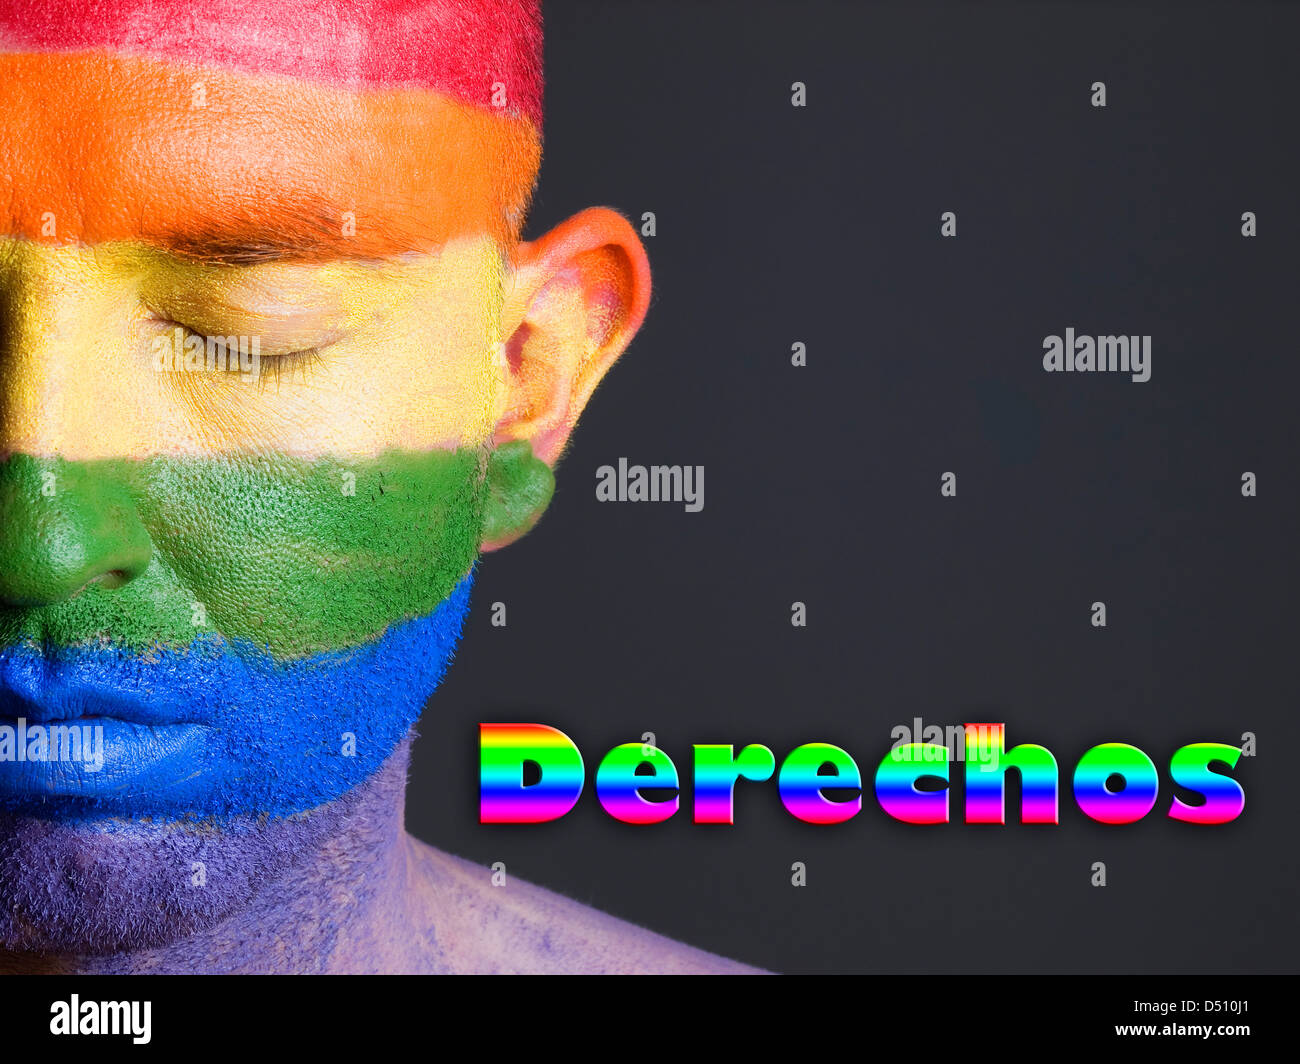 Hombre con la bandera gay pintada en la cara y con los ojos cerrados. La Palabra Stampa 'derechos' esta escrita en lado delle Nazioni Unite. Foto Stock